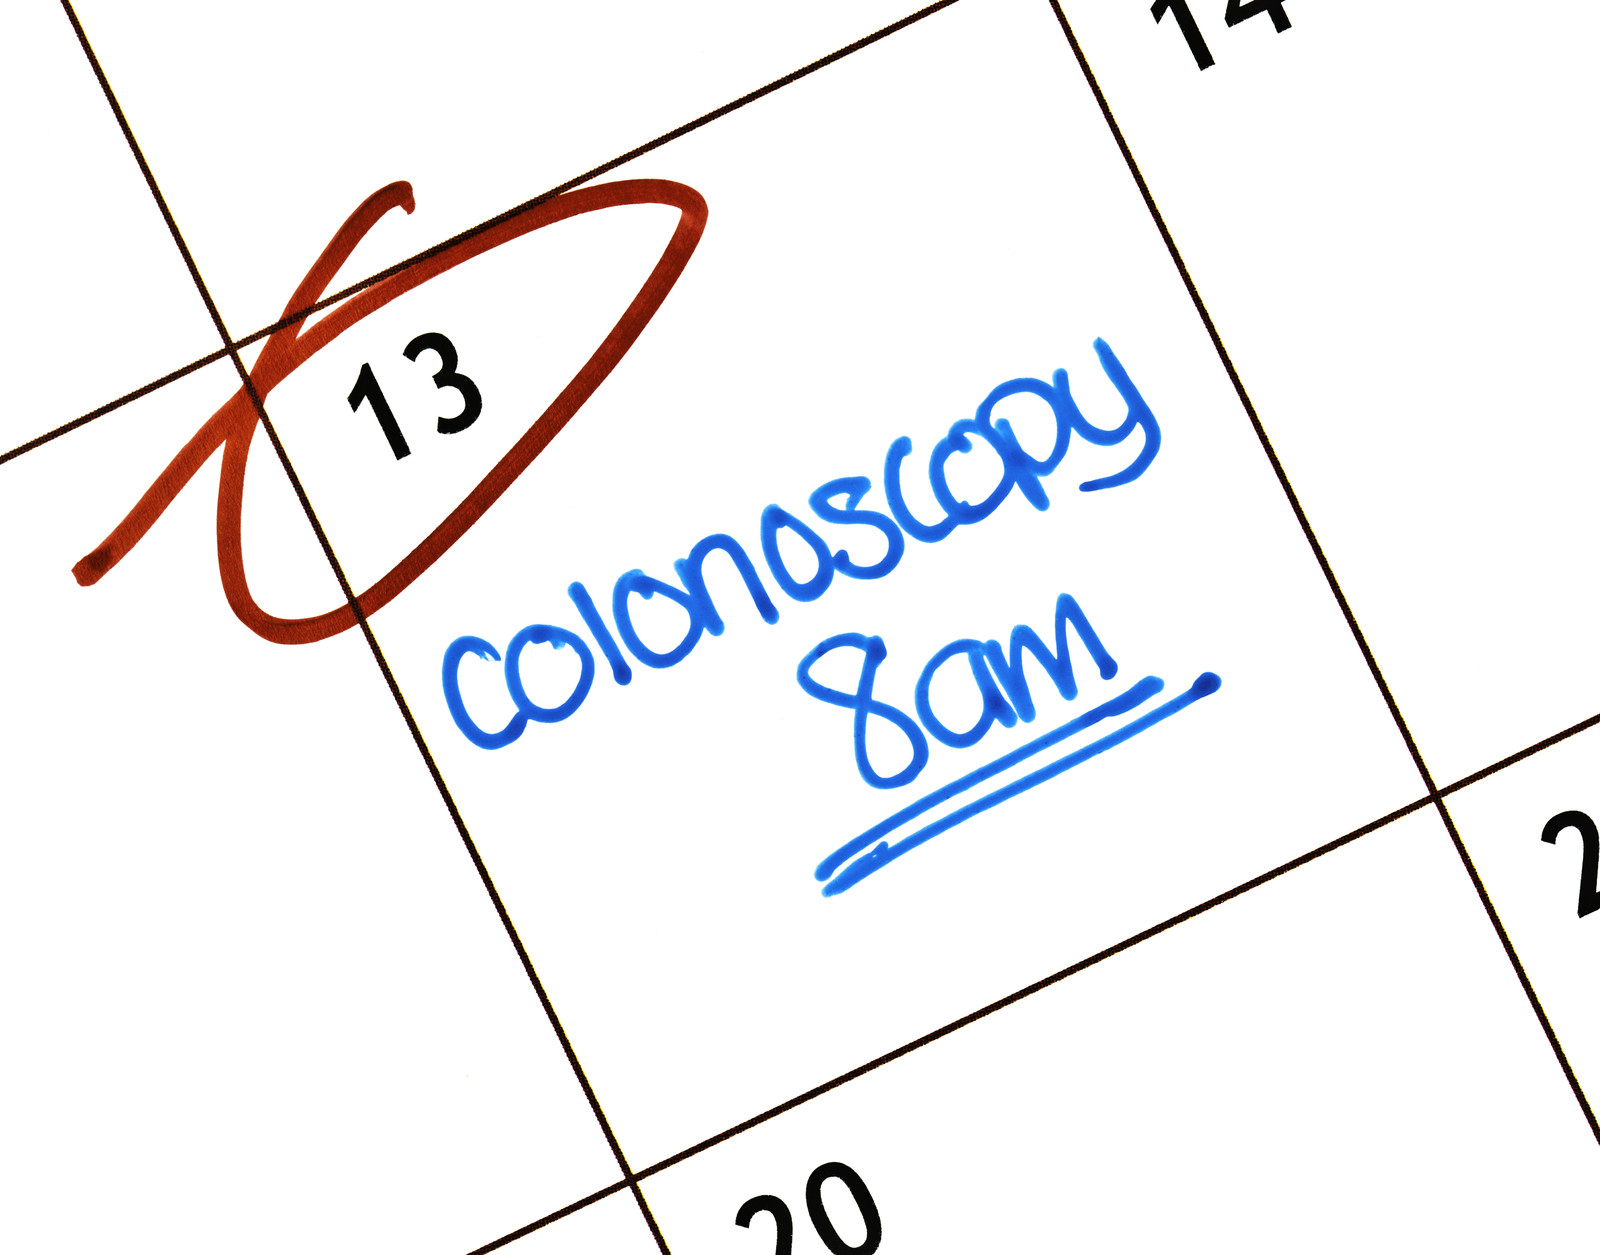 Preparing for a Colonoscopy?